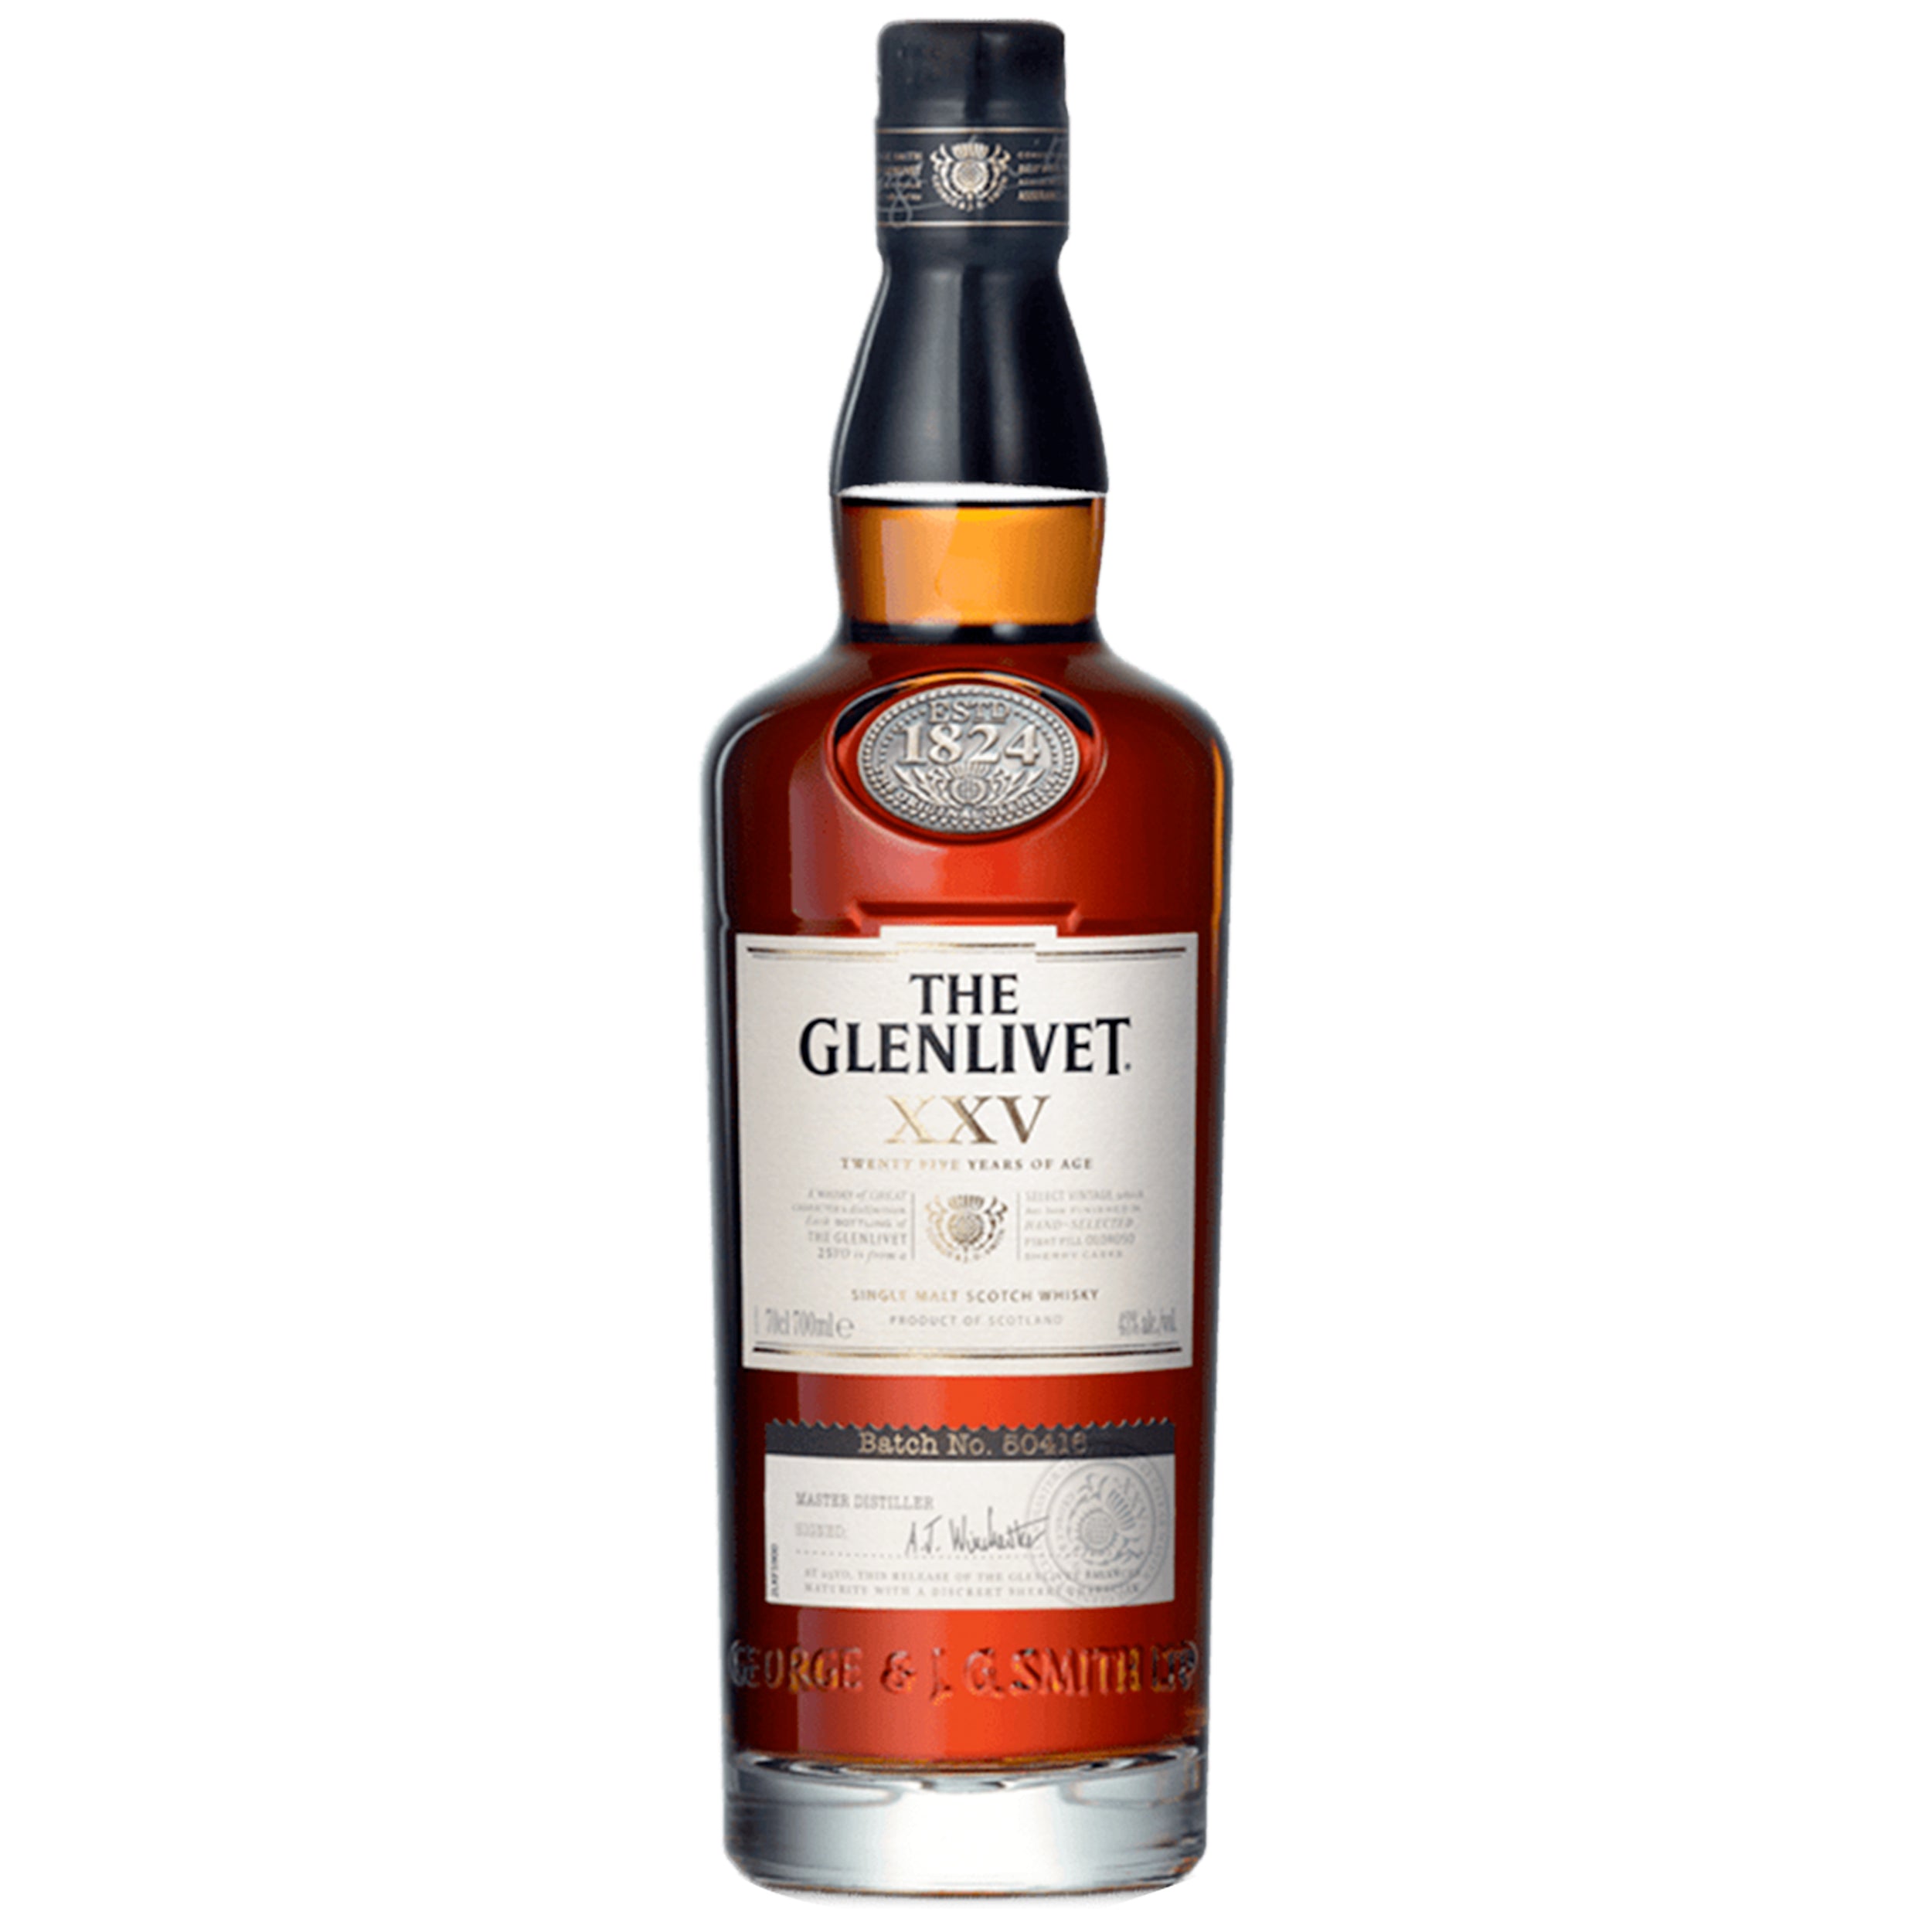 The Glenlivet XXV Scotch Whisky